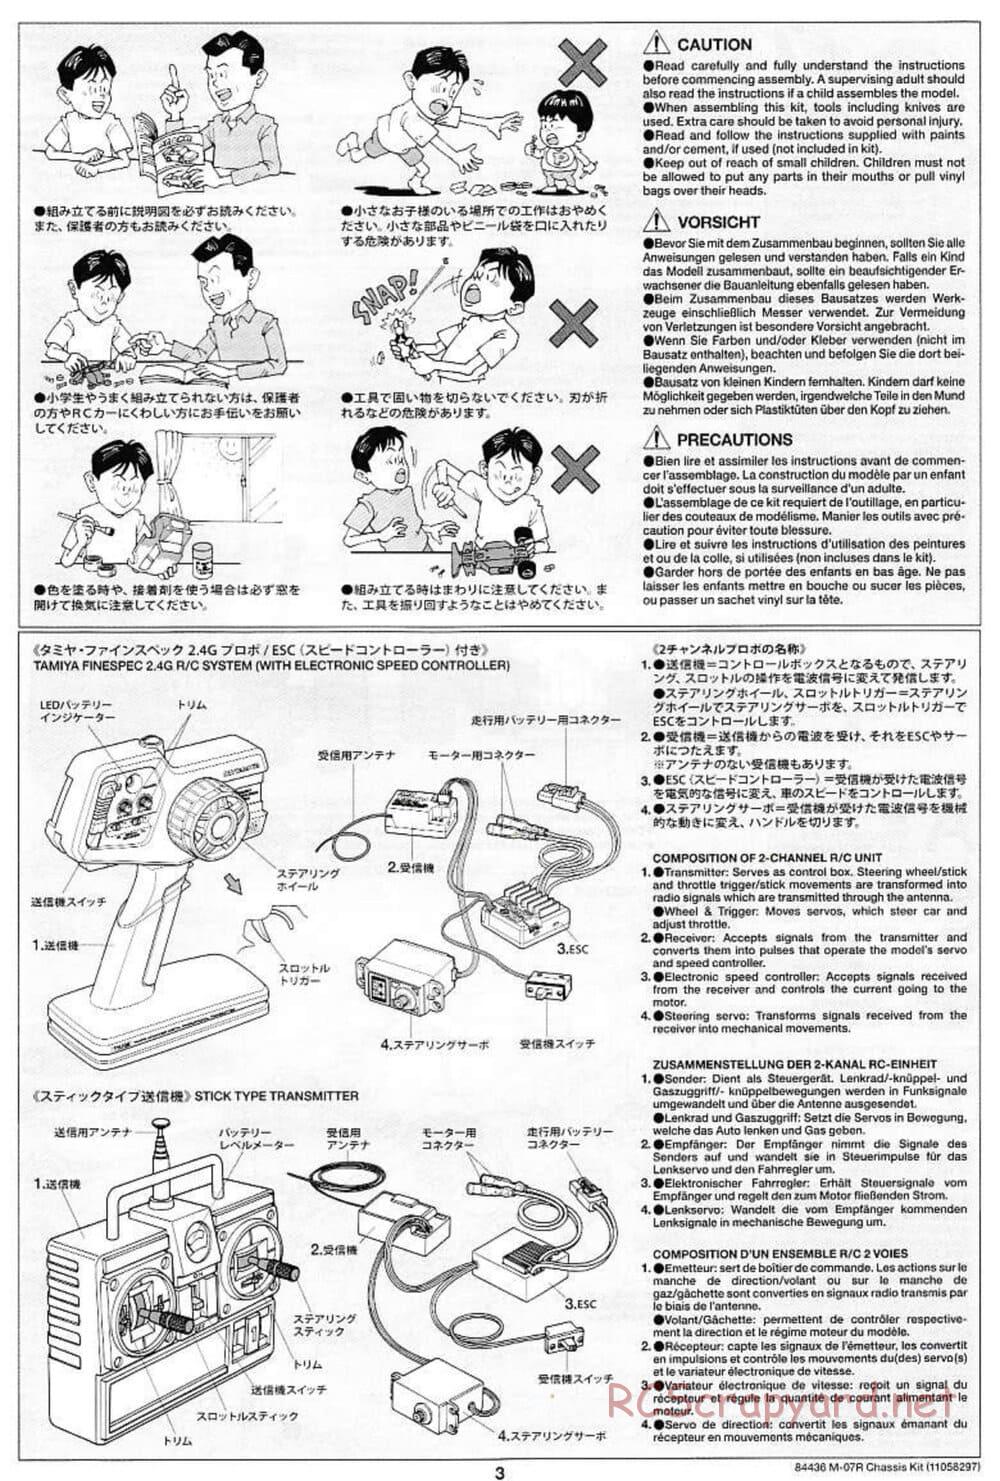 Tamiya - M-07R Chassis - Manual - Page 3